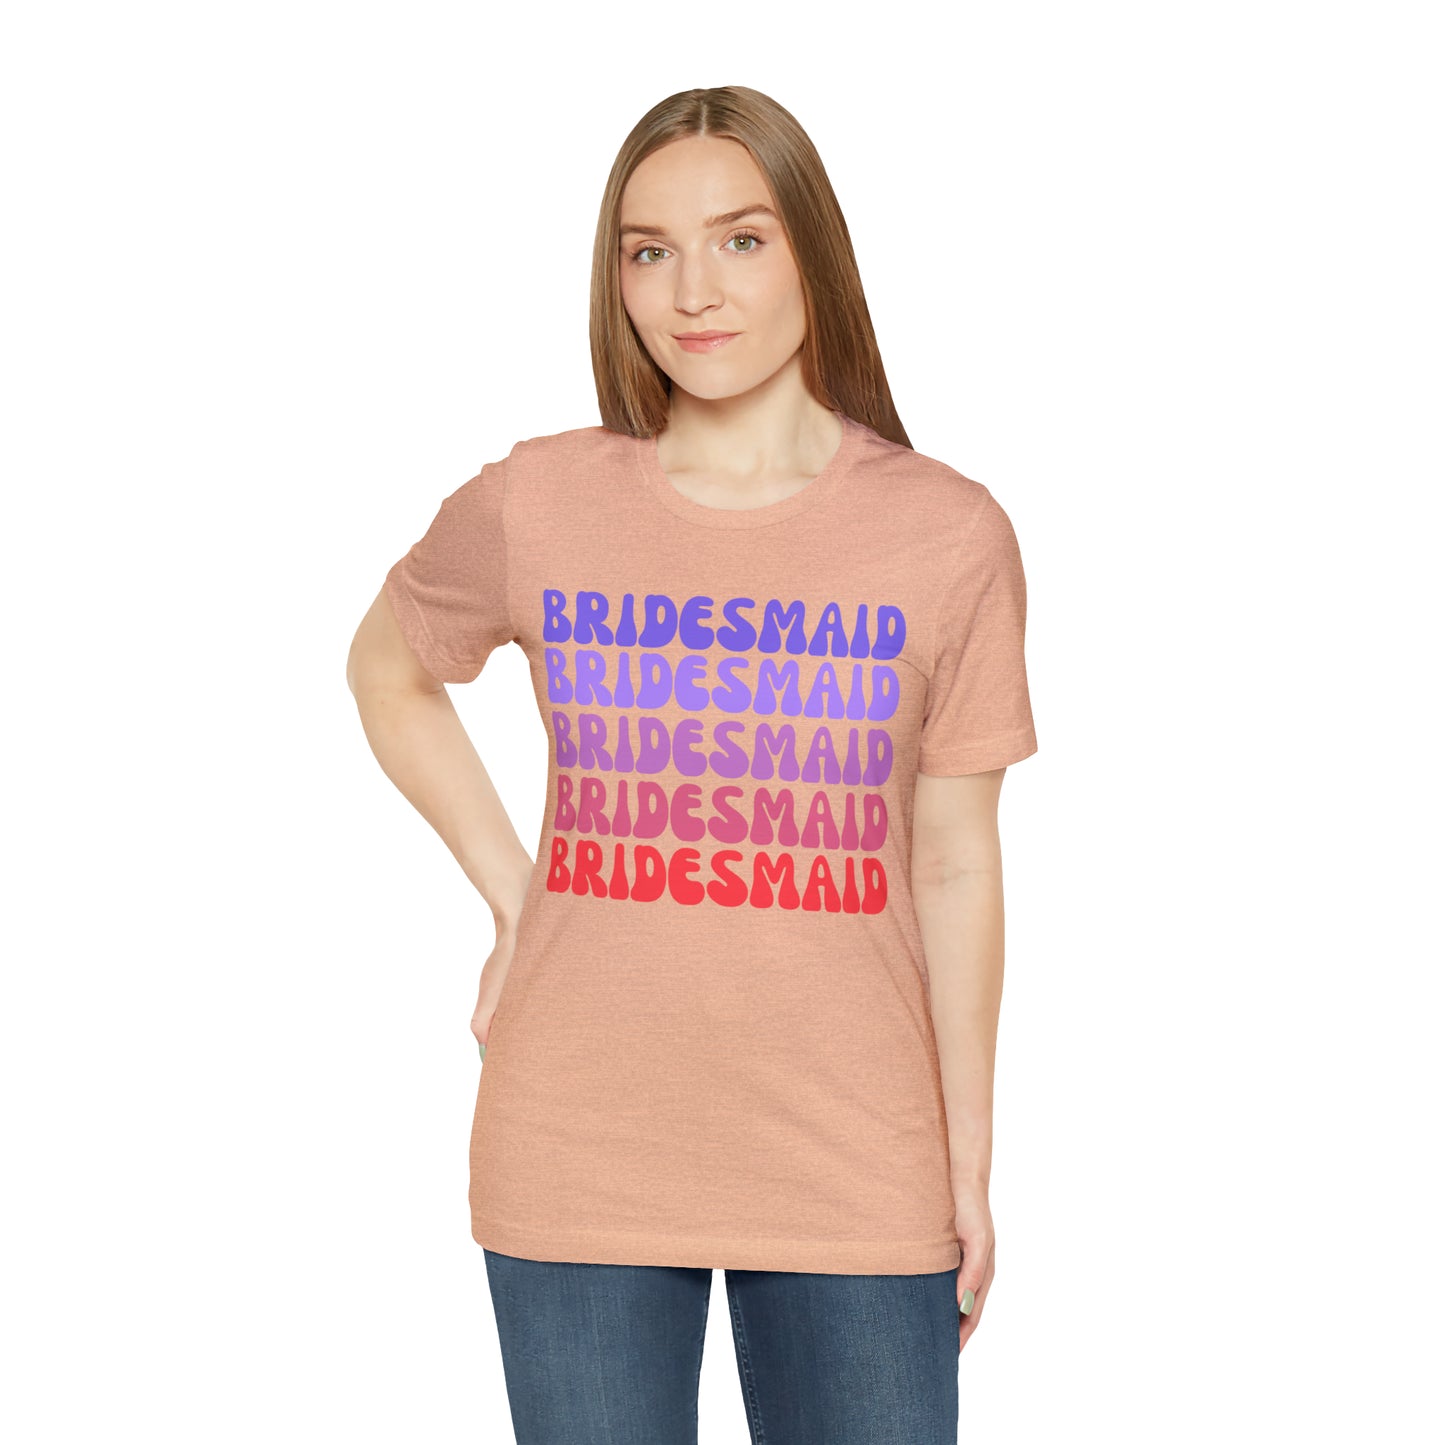 Retro Bridesmaid TShirt, Bridesmaid Shirt for Women, T285